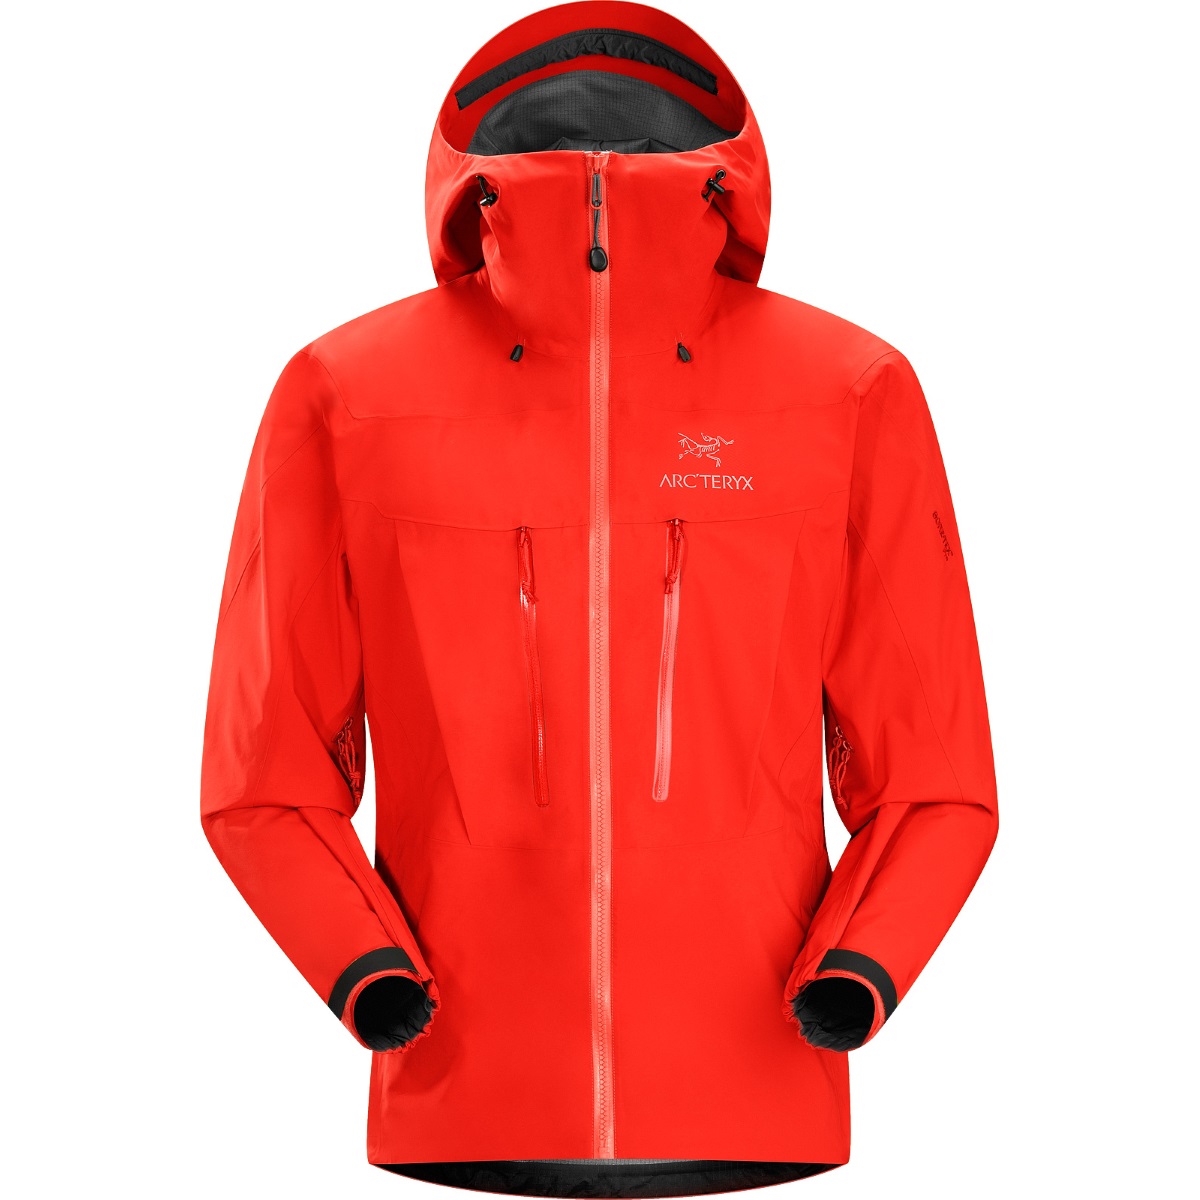 Alpha SV Jacket, men's, discontinued Spring 2014 colors